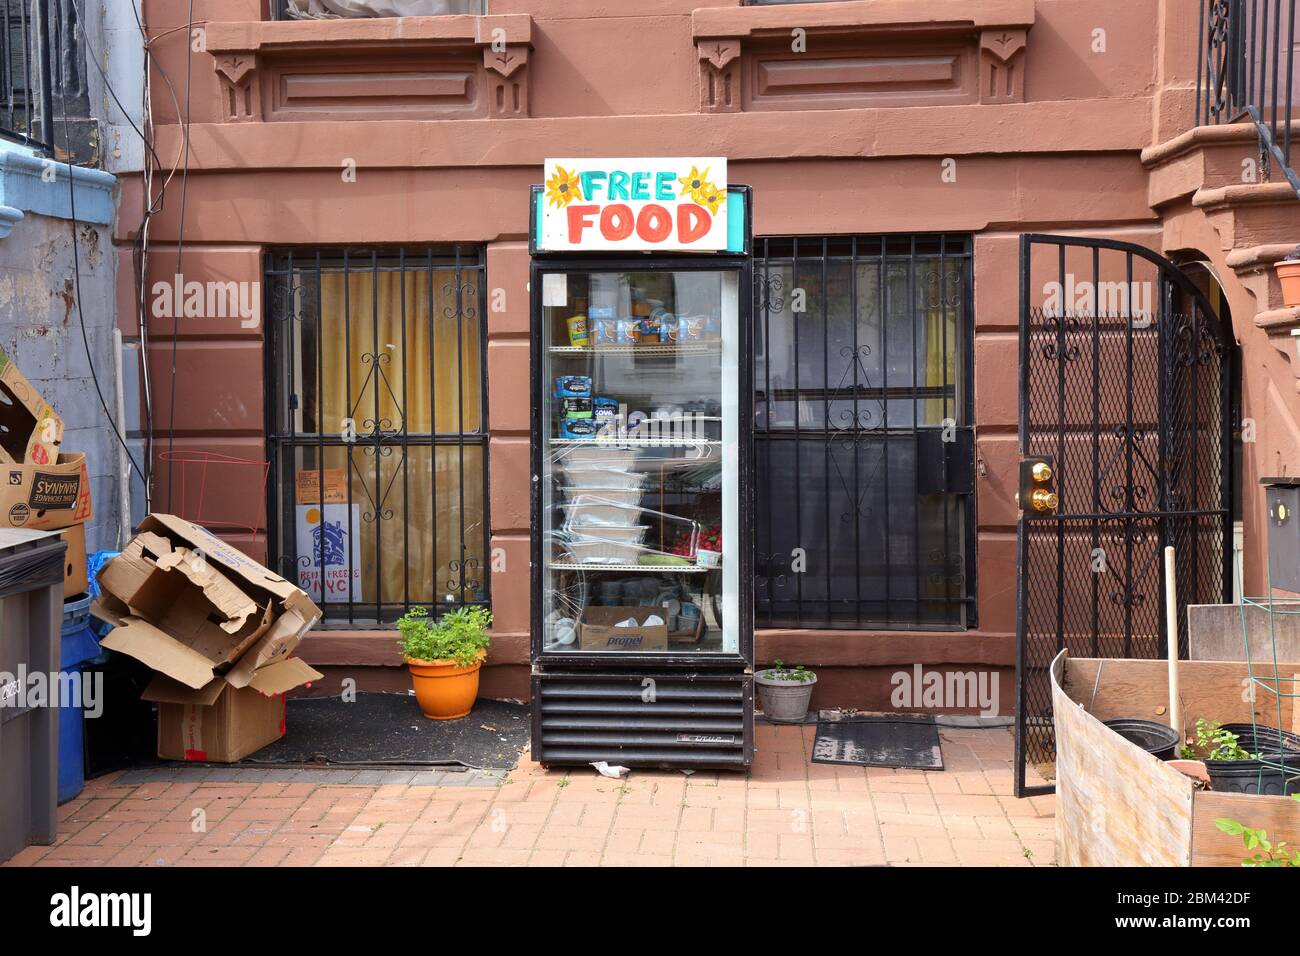 Un frigorifero gratuito per la comunità di cibo fuori da un edificio a Brooklyn per aiutare i meno fortunati. Foto Stock